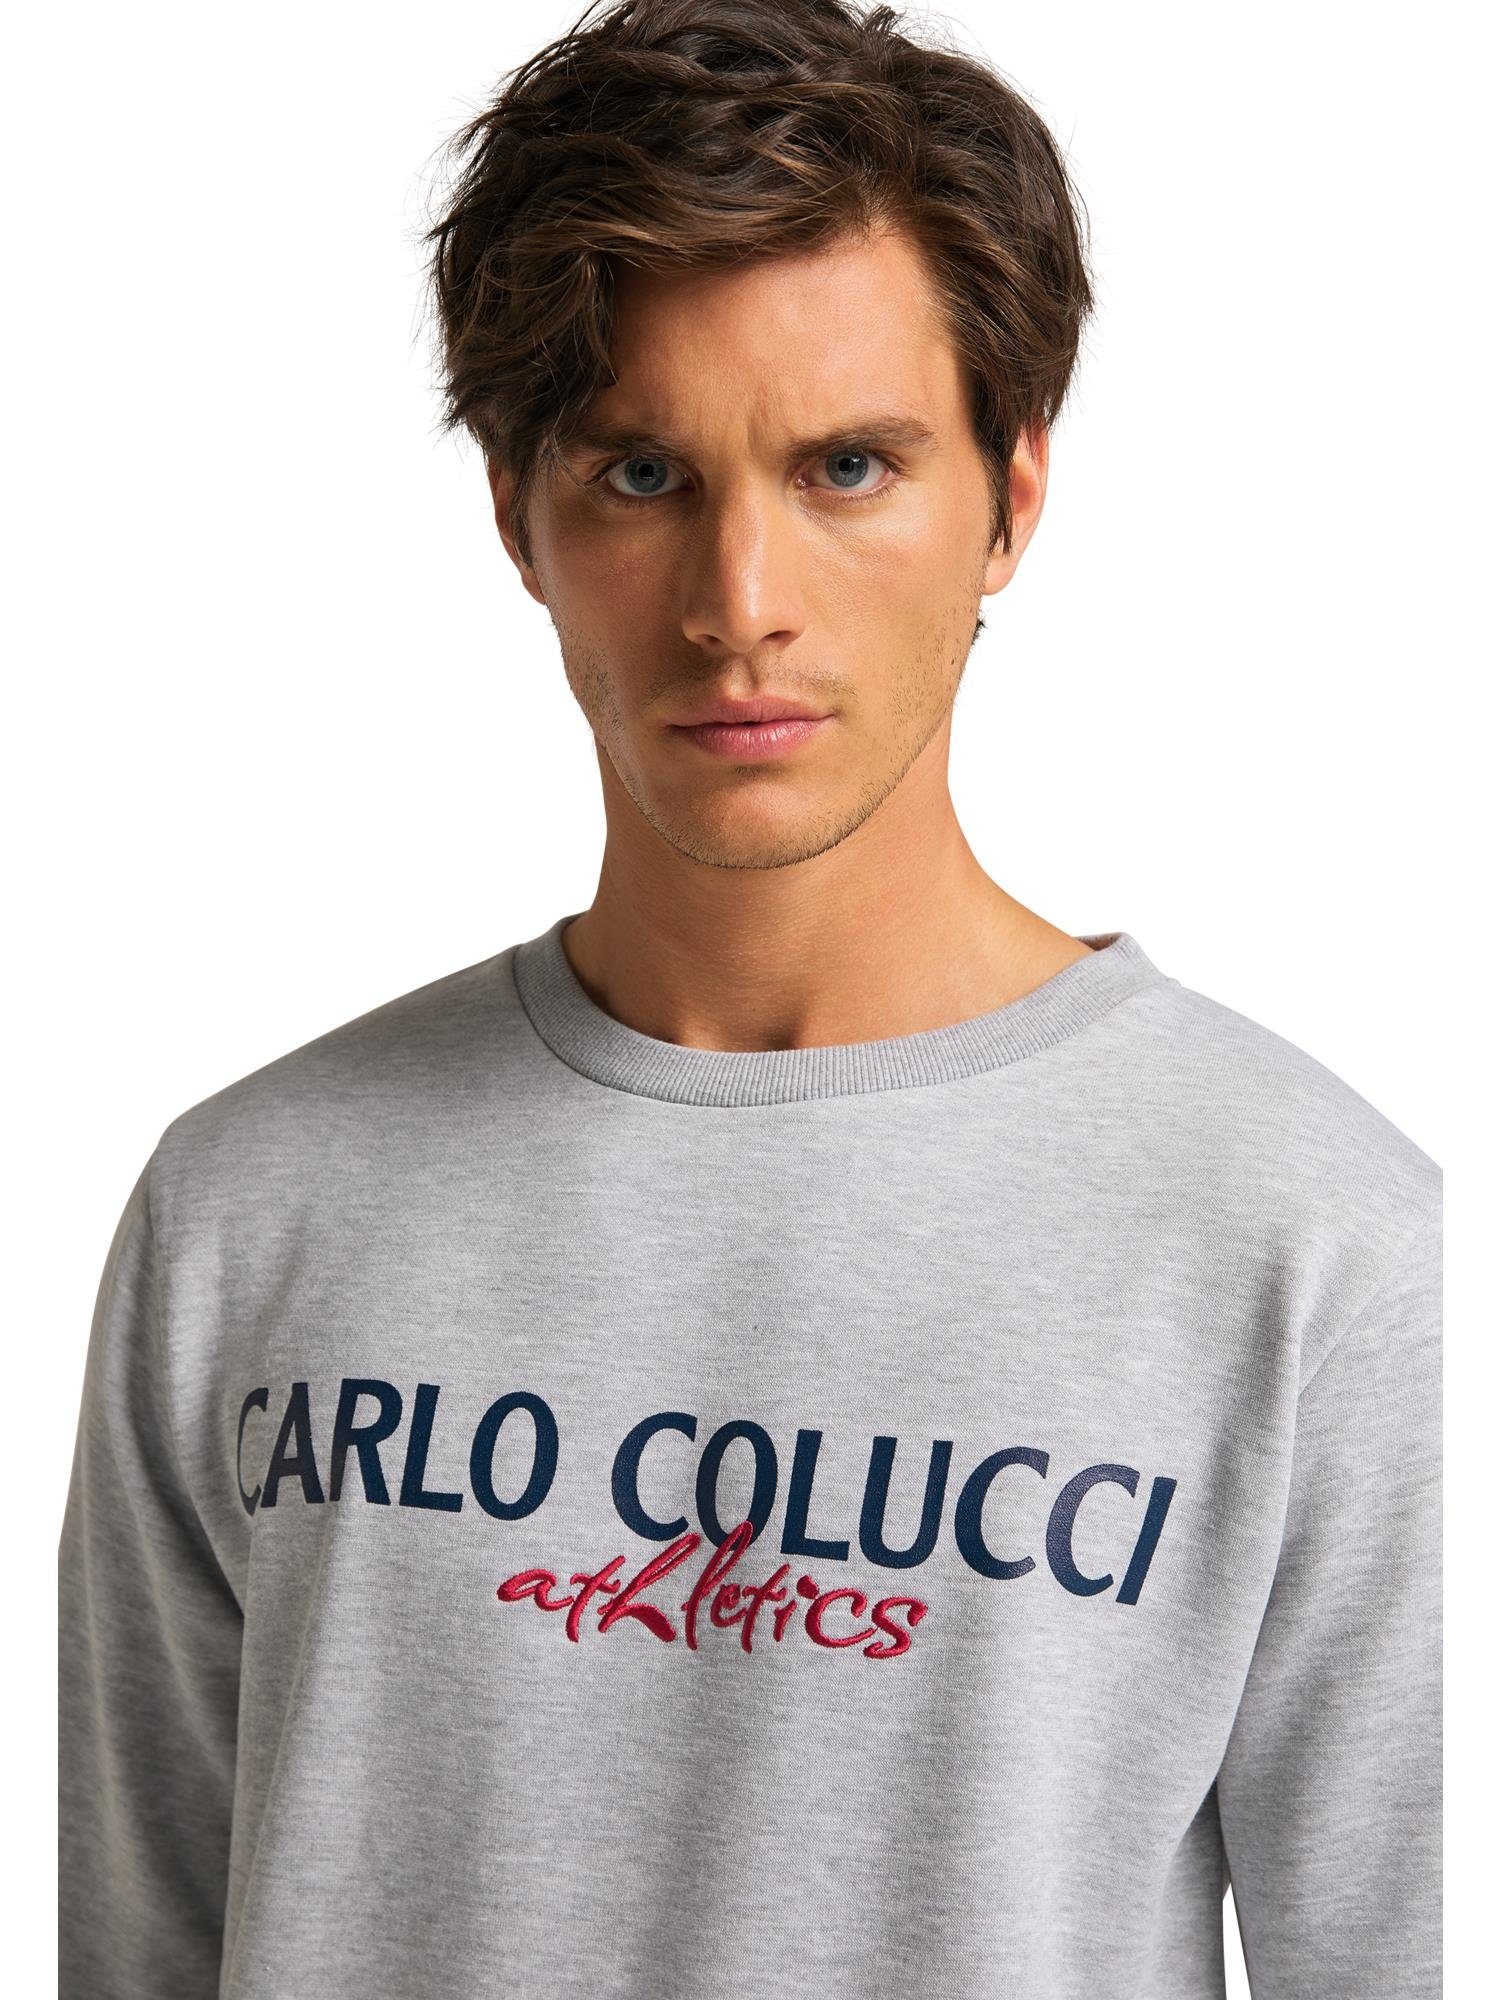 Contini COLUCCI CARLO Sweatshirt